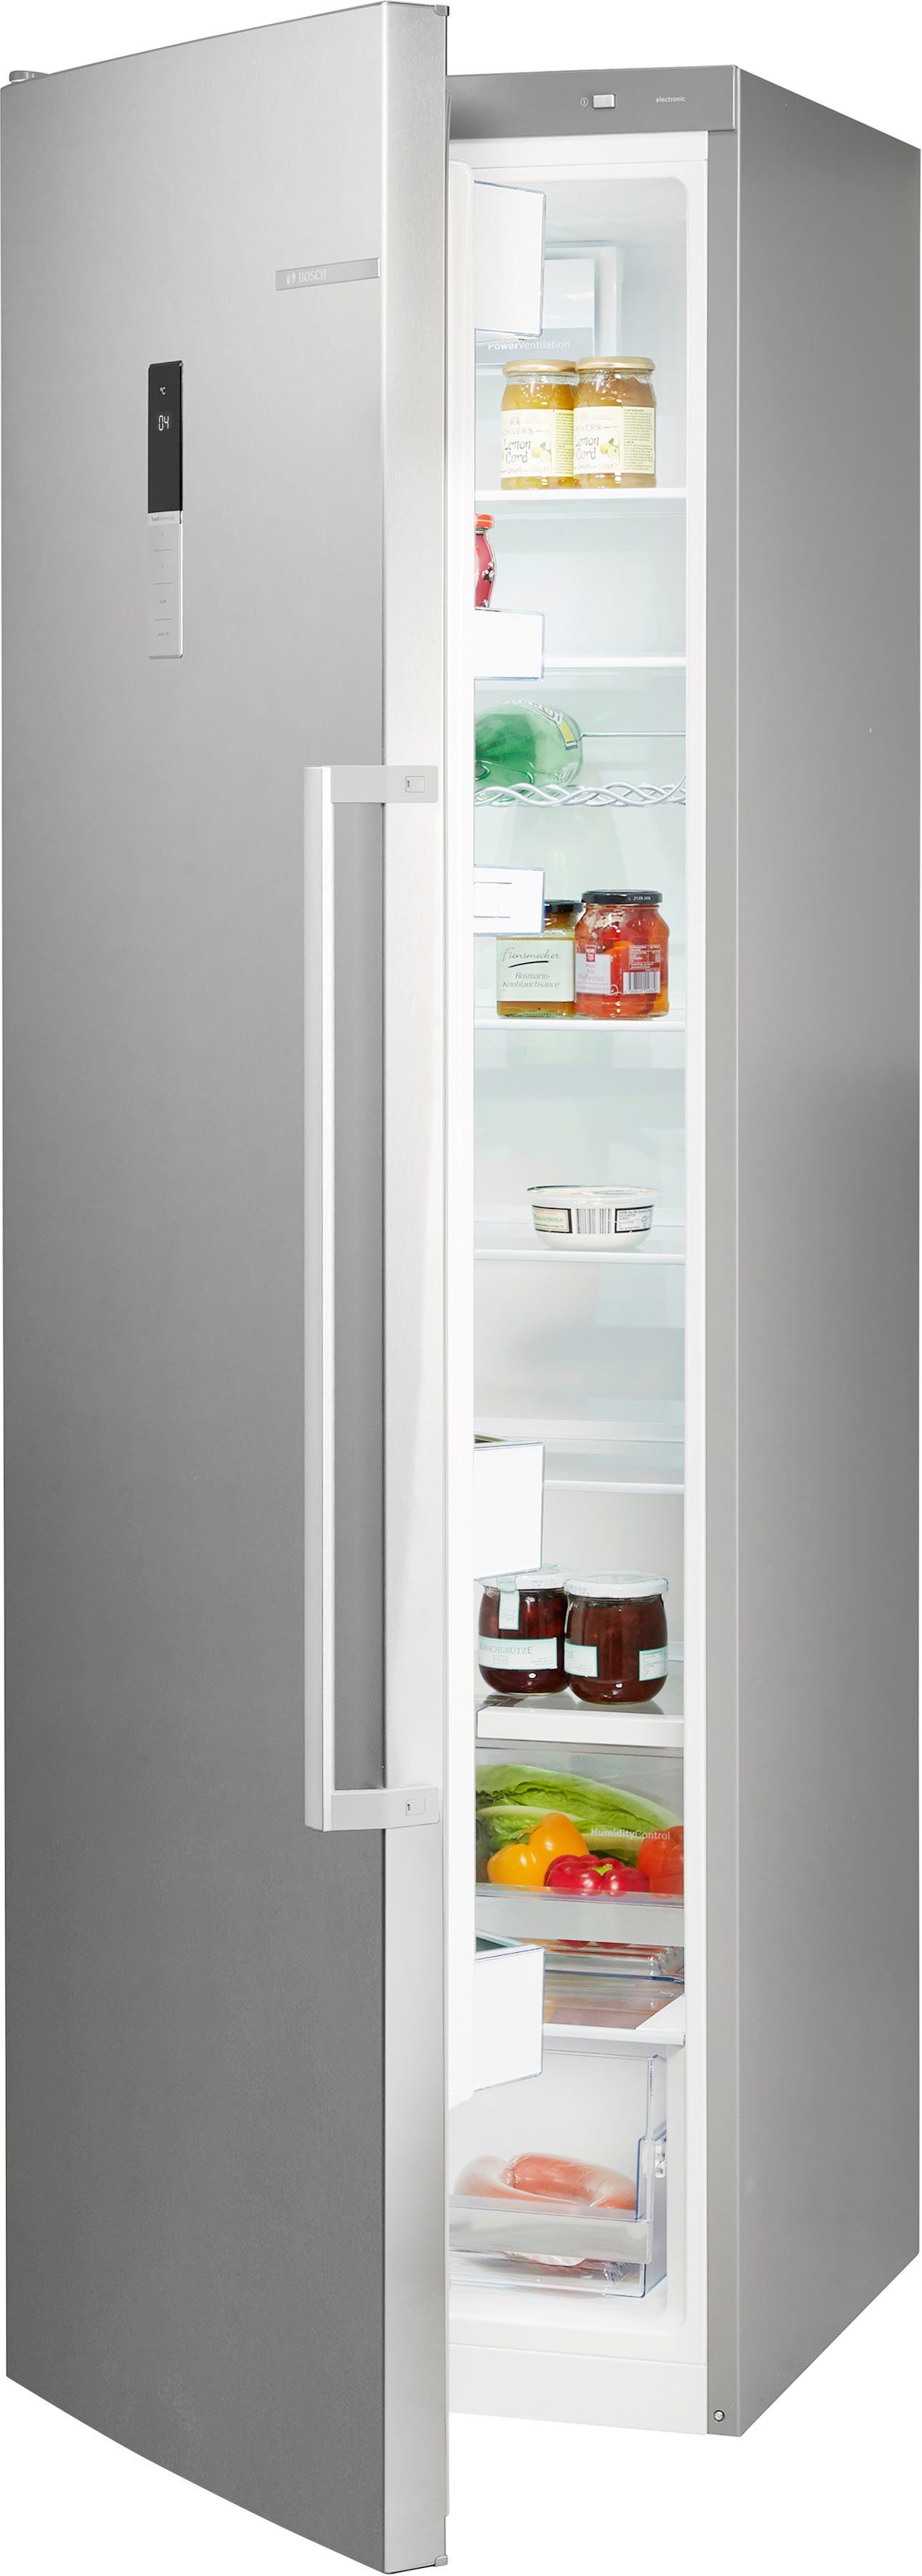 Kühlschrank ohne Gefrierfach kaufen?